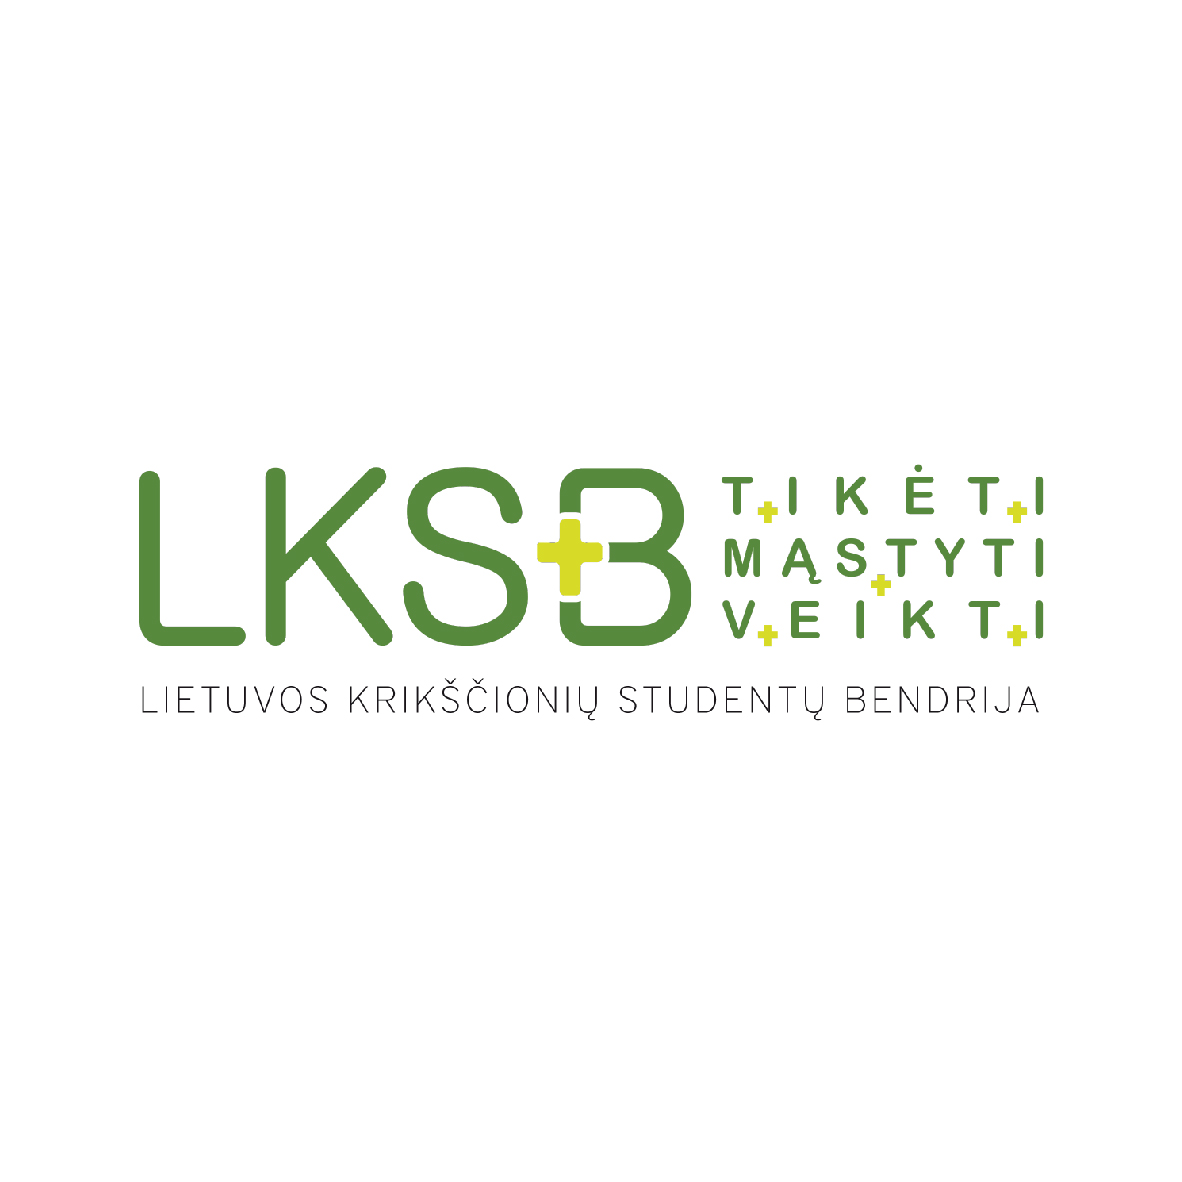 LKSB-logo-image